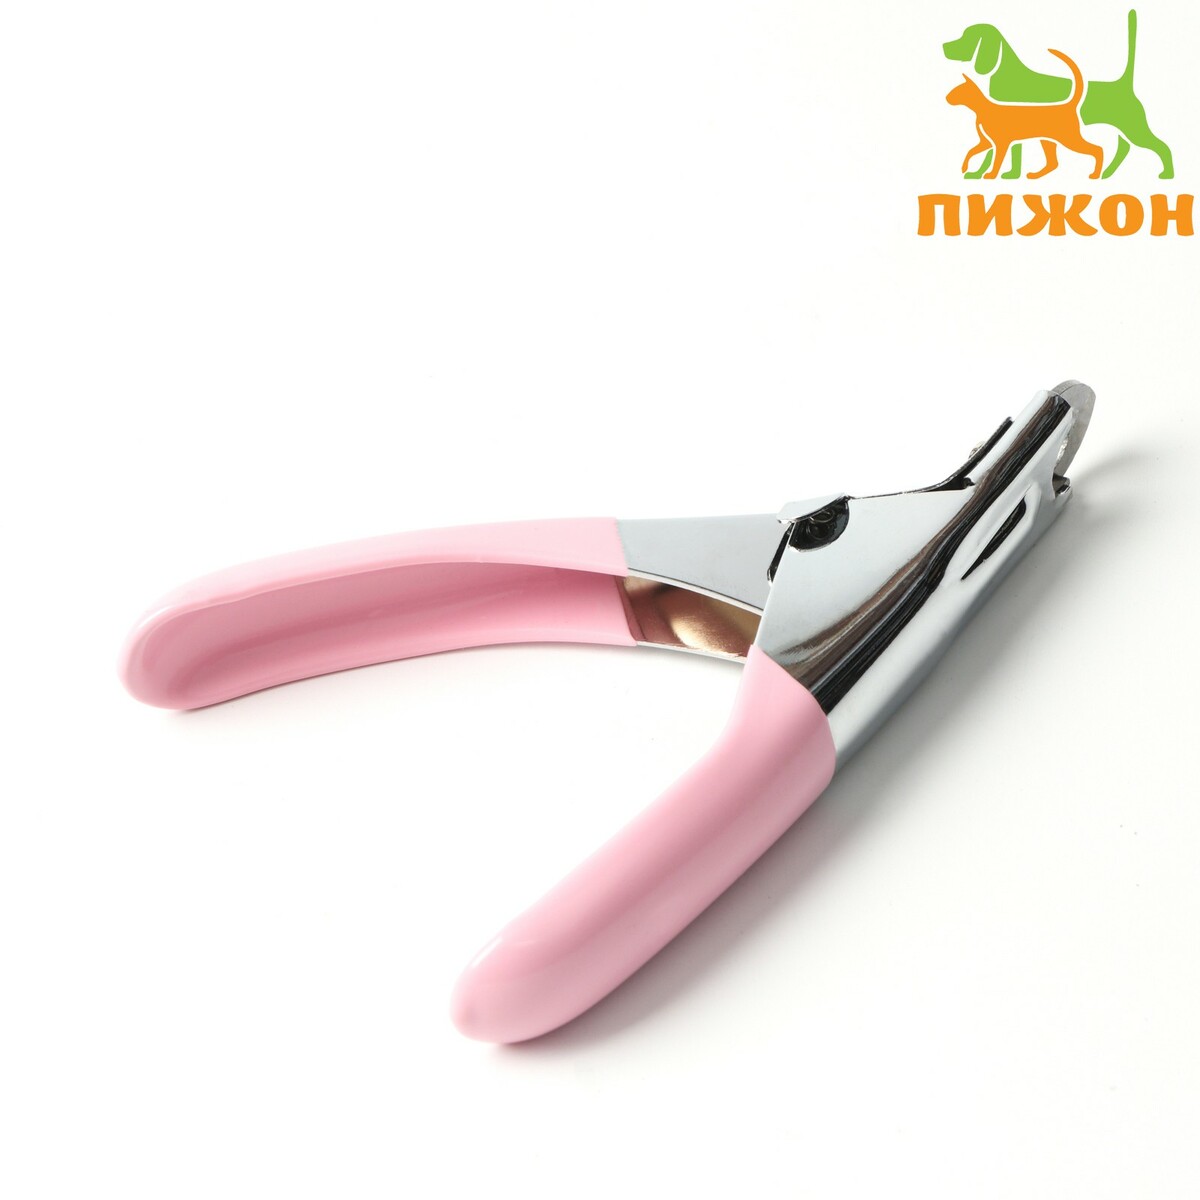 Когтерез-гильотина с прорезиненной ручкой, отверстие 7 мм, розовый